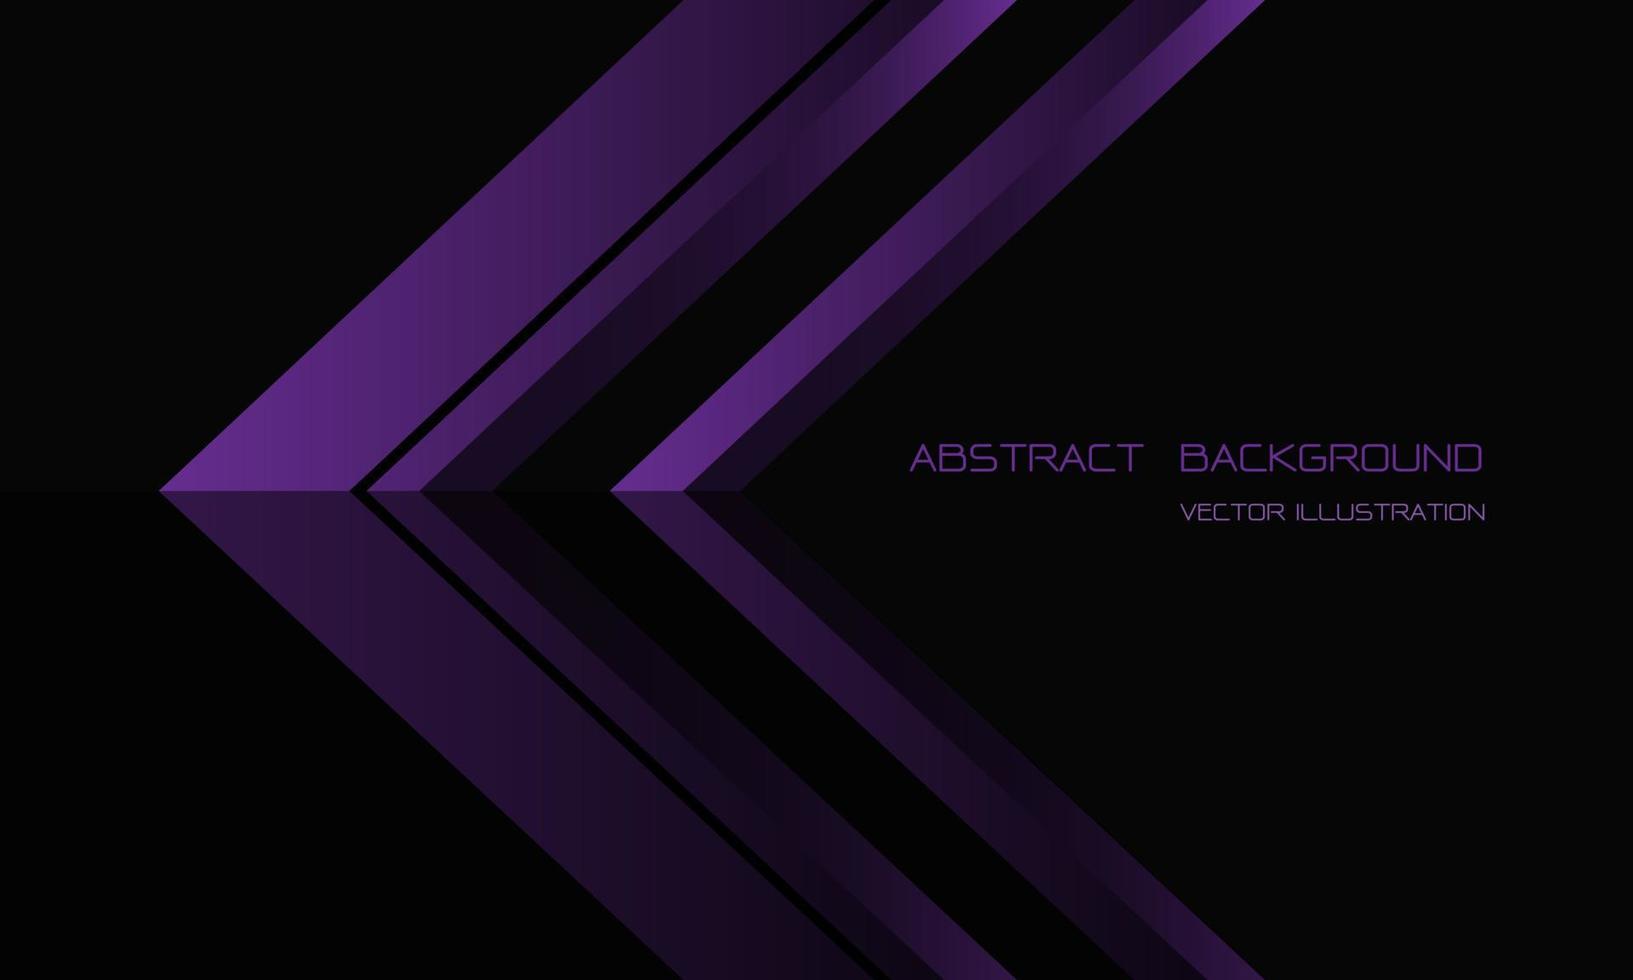 direção de seta roxa abstrata em preto com espaço em branco para design de texto vetor de fundo futurista de luxo moderno